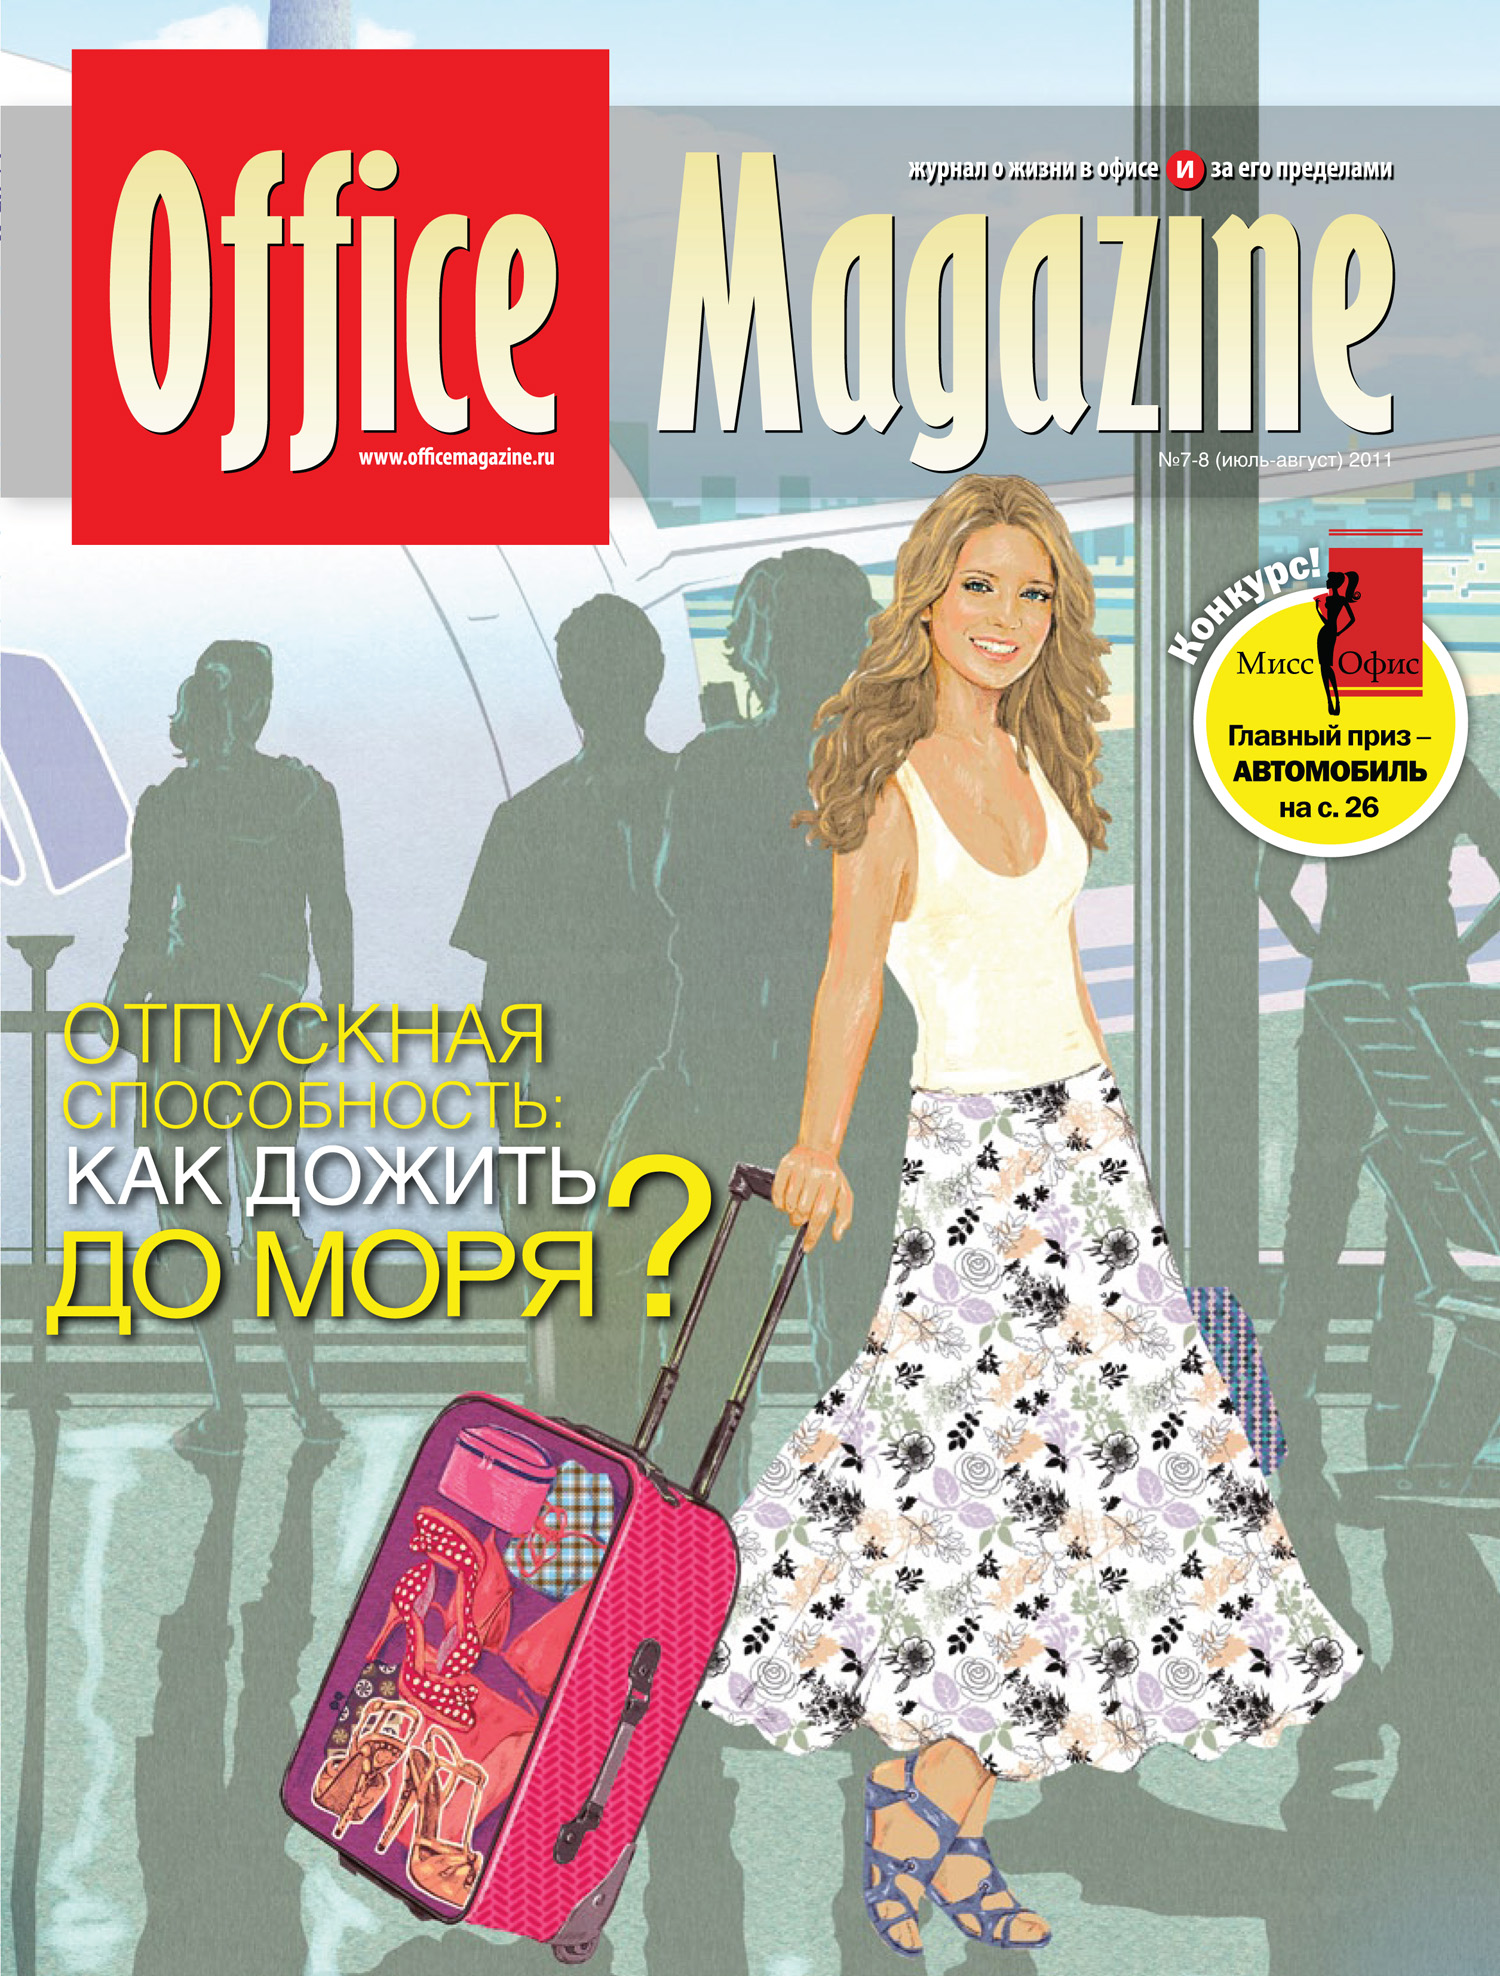 Office Magazine№7-8 (52) июль-август 2011